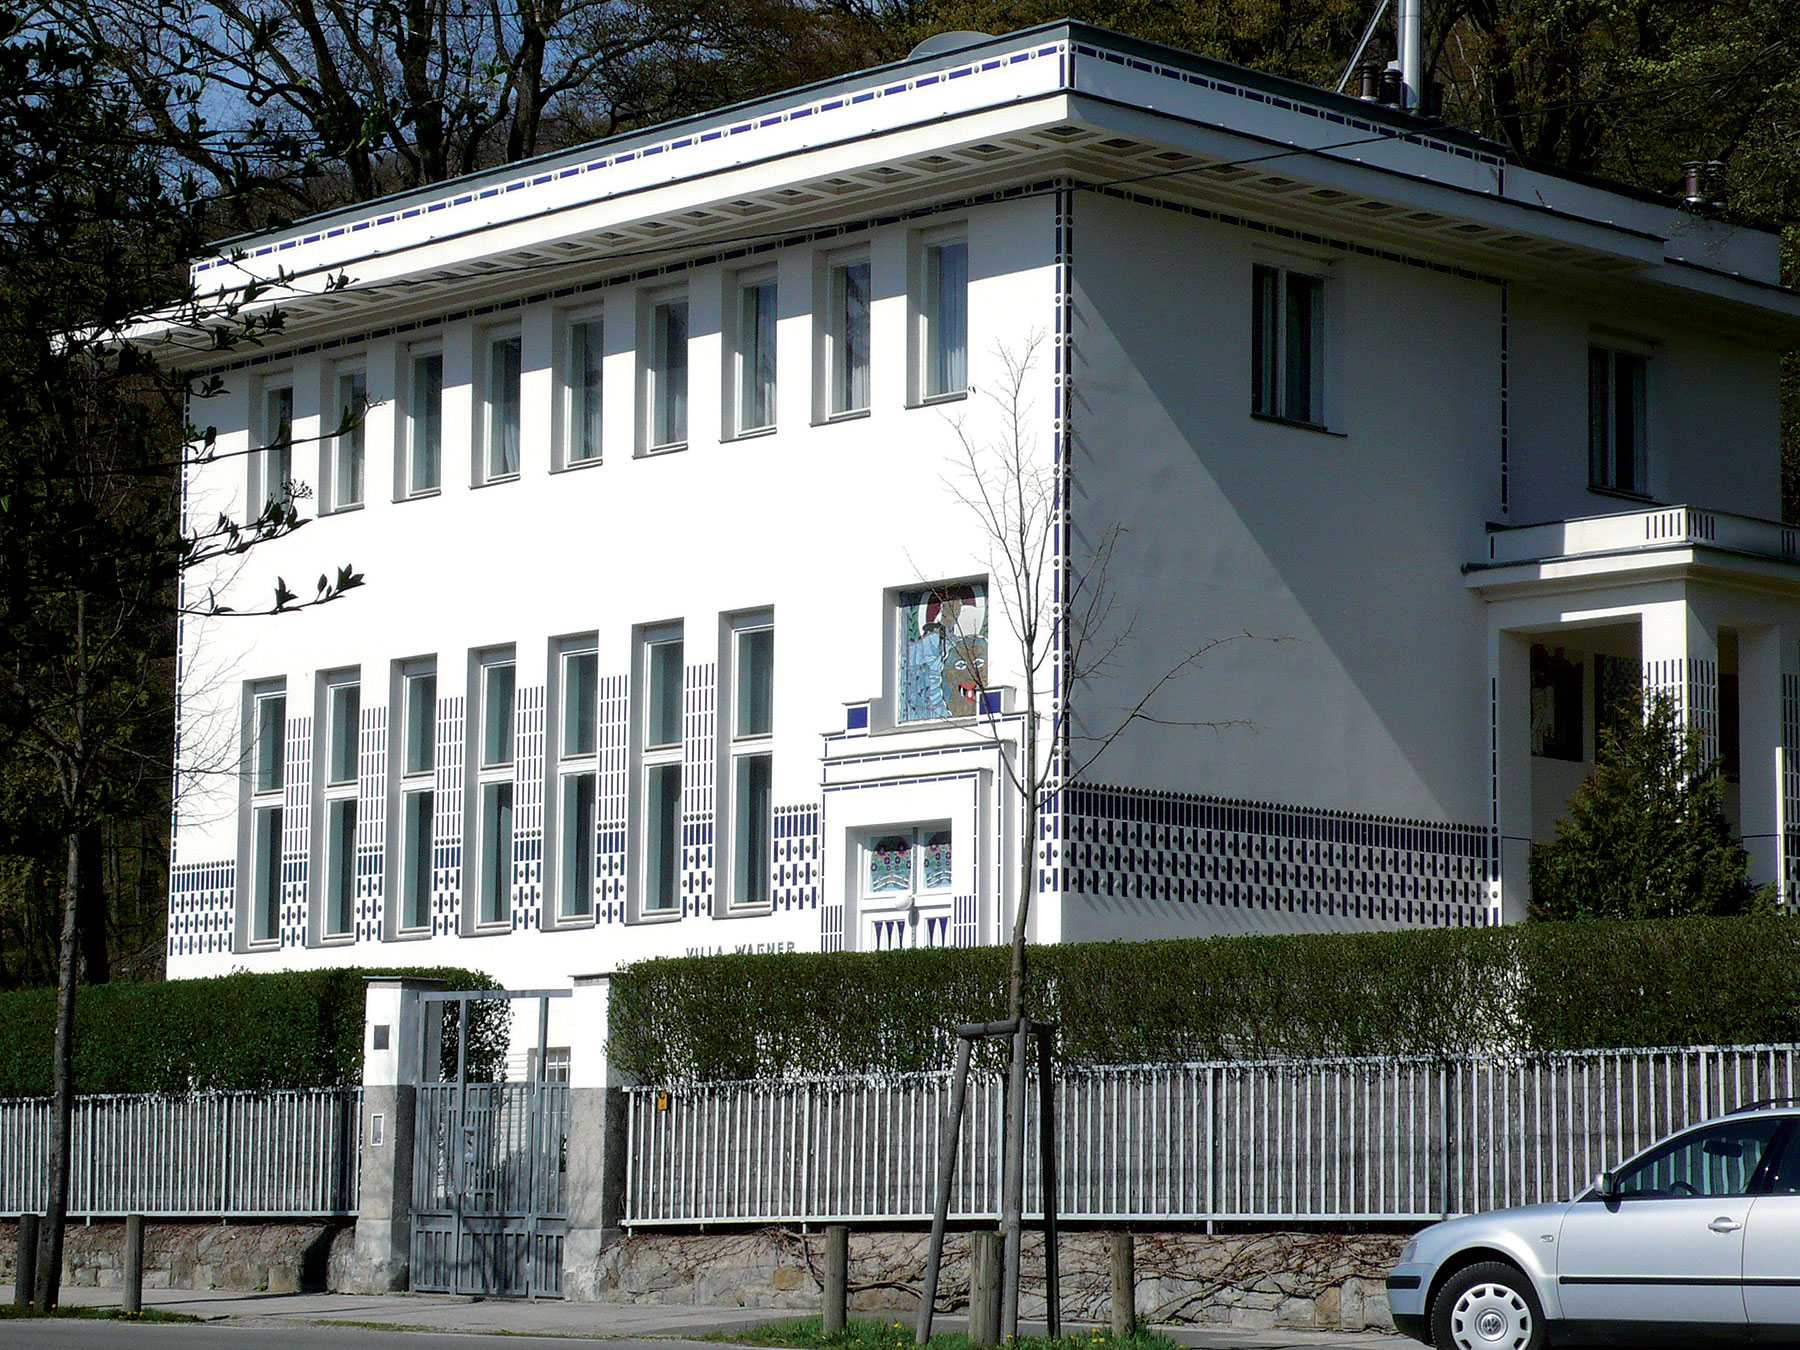 Klasicistické dielo Otto Wagner (1841 – 1918) patril k najuznávanejším rakúskym architektom svojich čias s množstvom verejných a akademických zákaziek. Známy je jeho manifest Moderne Architektur, v ktorom Wagner zdôrazňuje dôležitosť nového prístupu k architektúre, kde princípy vychádzajú z účelnosti, a ovplyvnil veľkú časť európskej architektonickej avantgardy. Na fotografii publikujeme Wagnerovu vilu II z roku 1913 vo viedenskej štvrti Hütteldorf, ktorá má uzatvorenú kompozíciu, symetriu a strohé využitie výzdoby. Ide o stavbu, ktorá svojou hmotnou vyváženosťou vytvára „klasicistické dielo“ a svojou jednoduchosťou tvorí kontrast s bohato zdobenou Wagnerovou vilou I z 80. rokov 19. storočia. Nad vstupným portálom je nádherná mozaika od Kolomana Mosera.